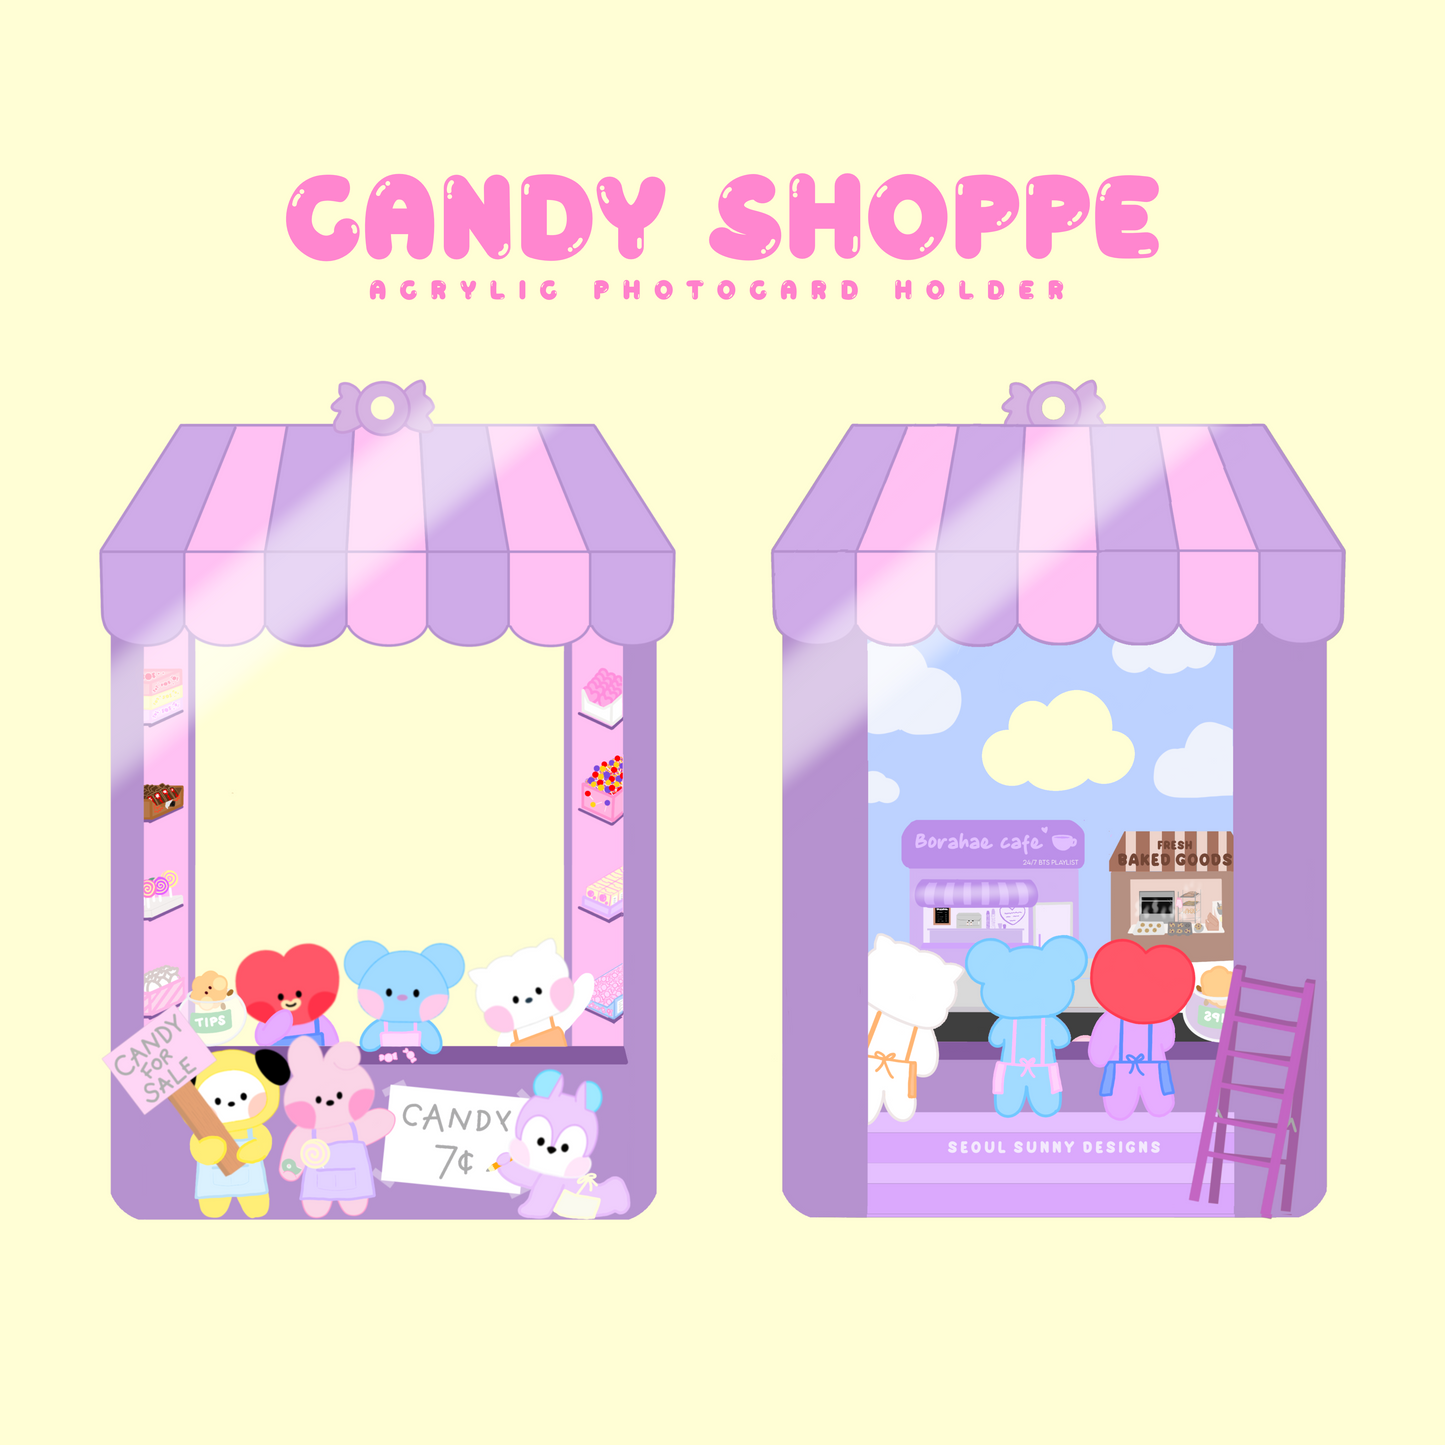 Seoul Sunny Designs BT21 Candy Shoppe Acrylic Photocard Holder